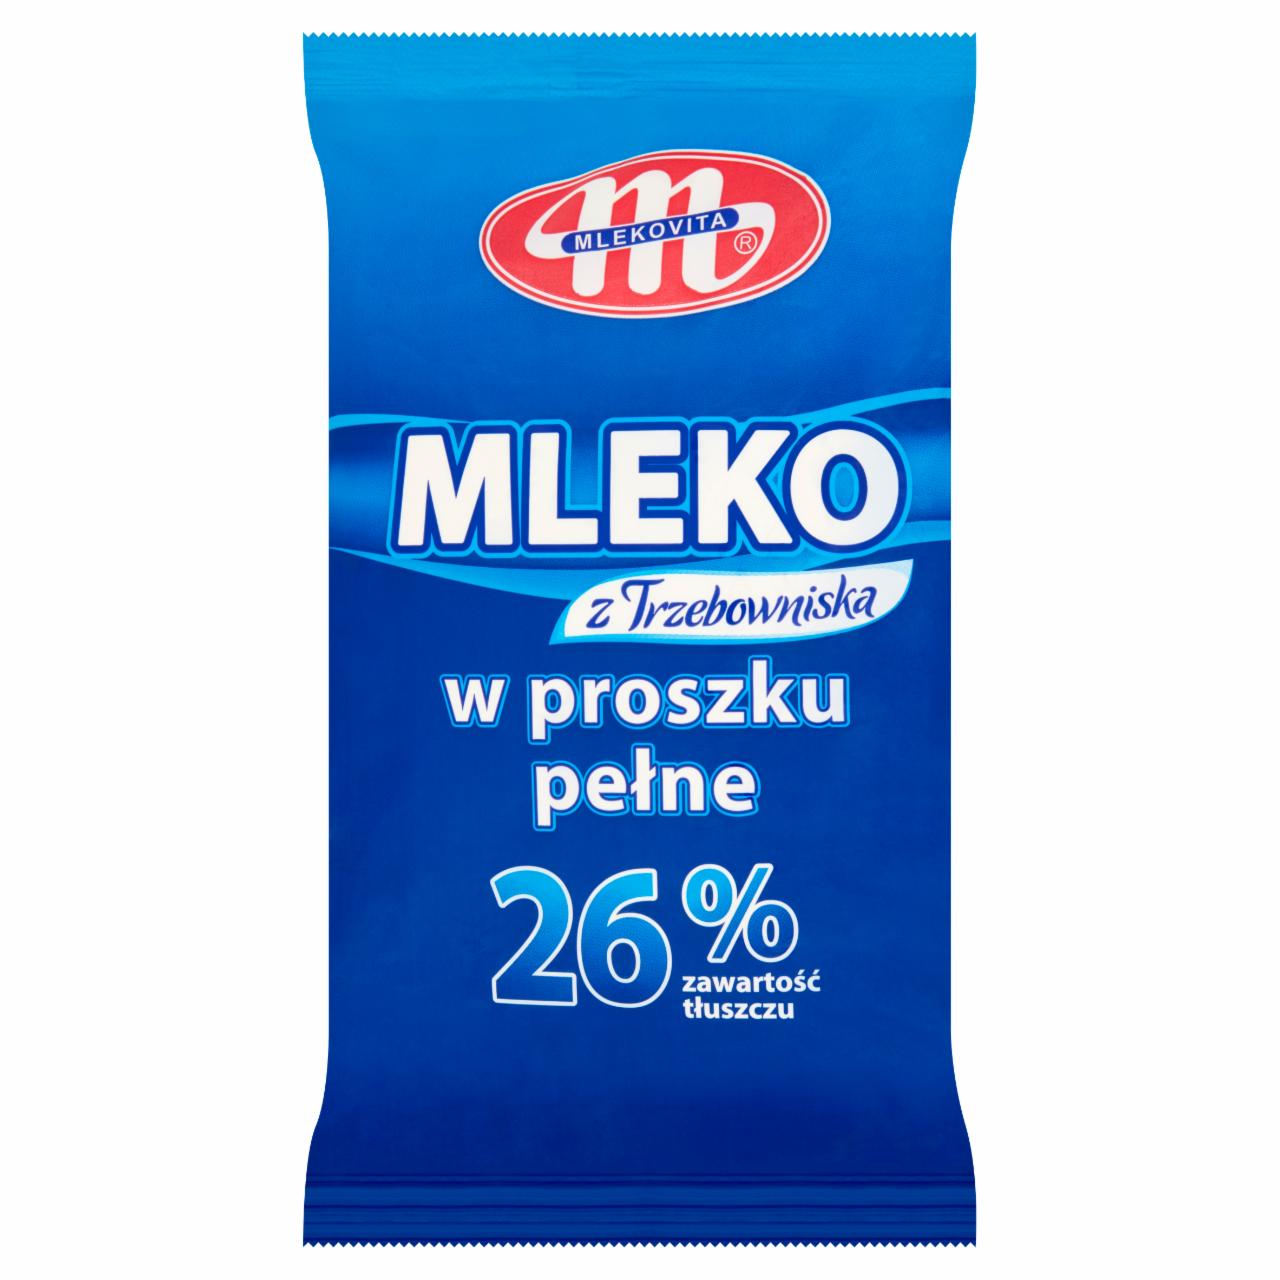 Zdjęcia - Mlekovita Mleko z Trzebowniska w proszku pełne 500 g